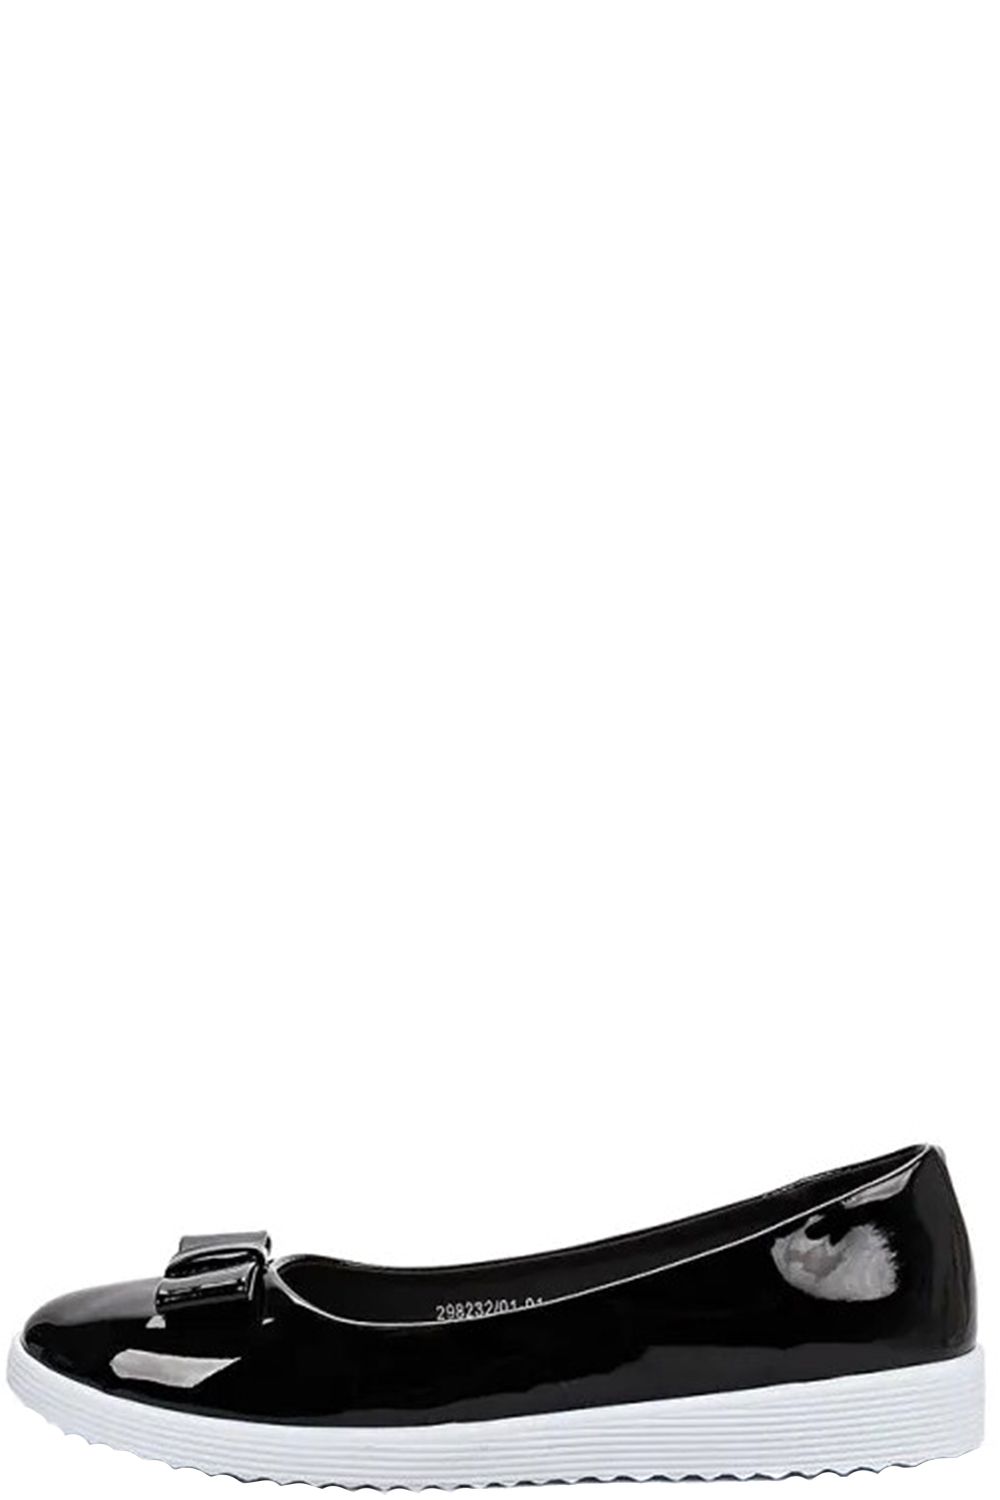 Туфли Crosby, размер 38, цвет черный 298232/01-01 - фото 2